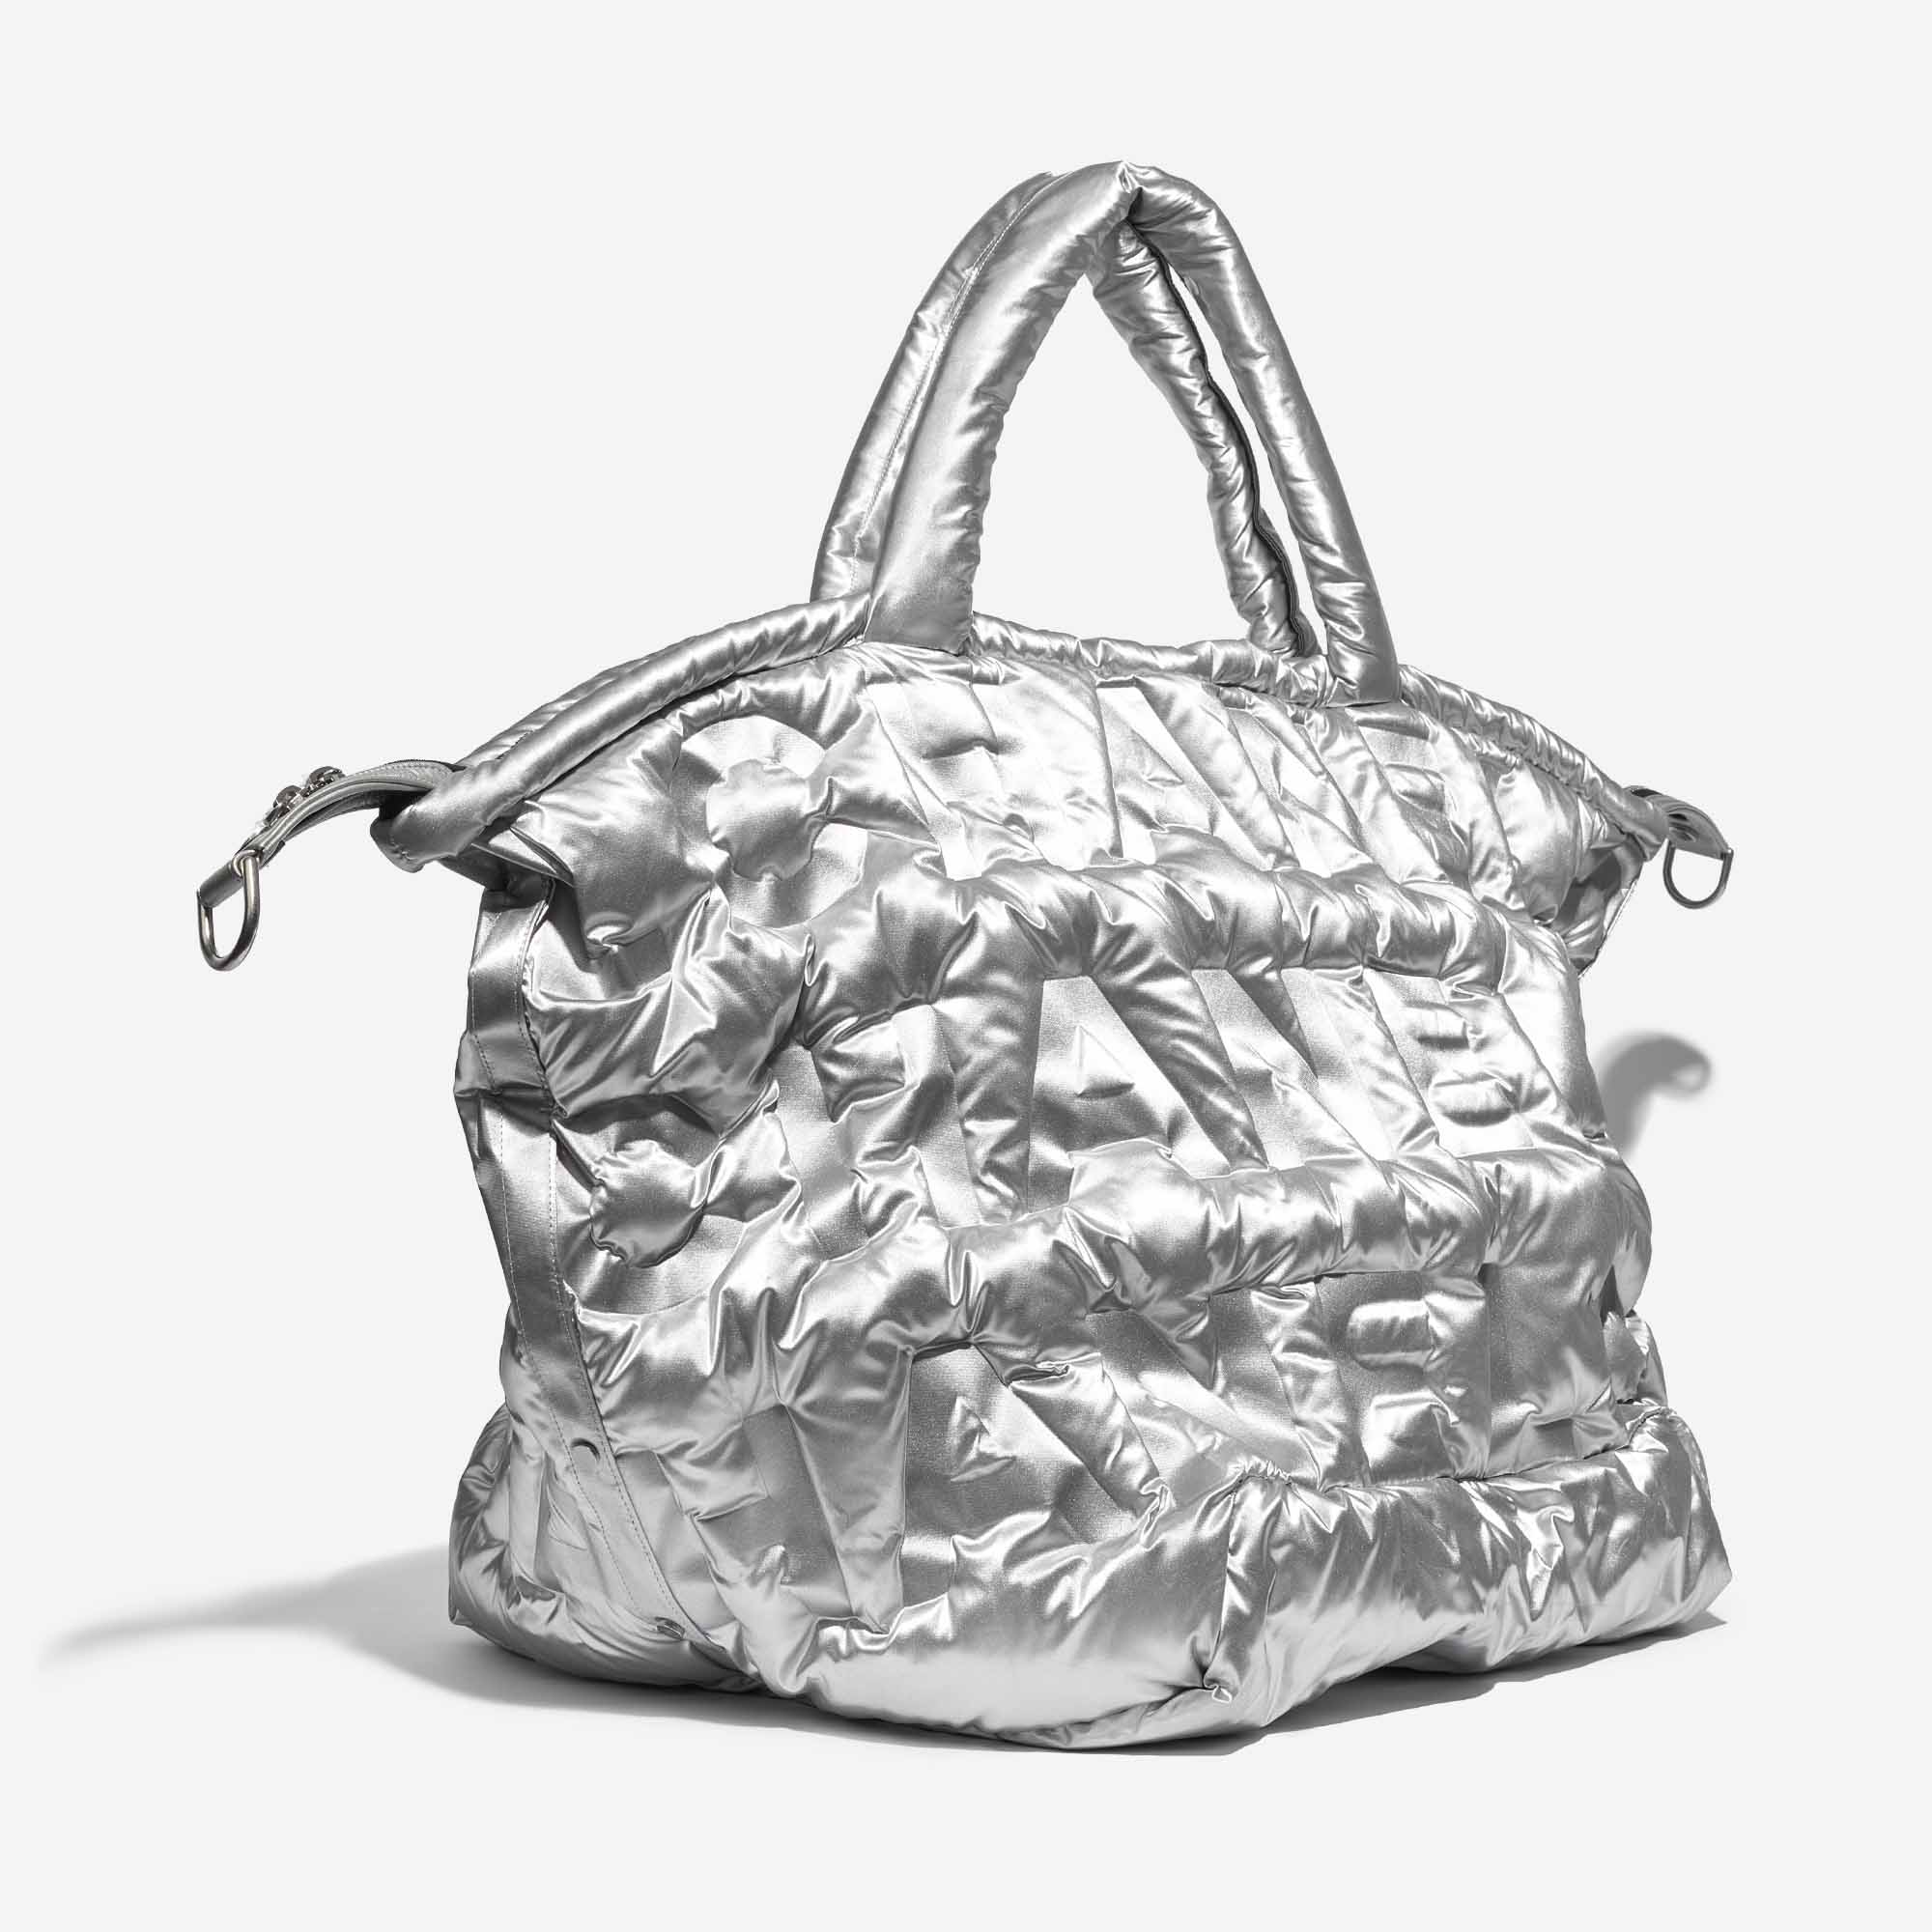 Sac Chanel d'occasion Shopper XXL Nylon Argent Argent Vendez votre sac de créateur sur Saclab.com